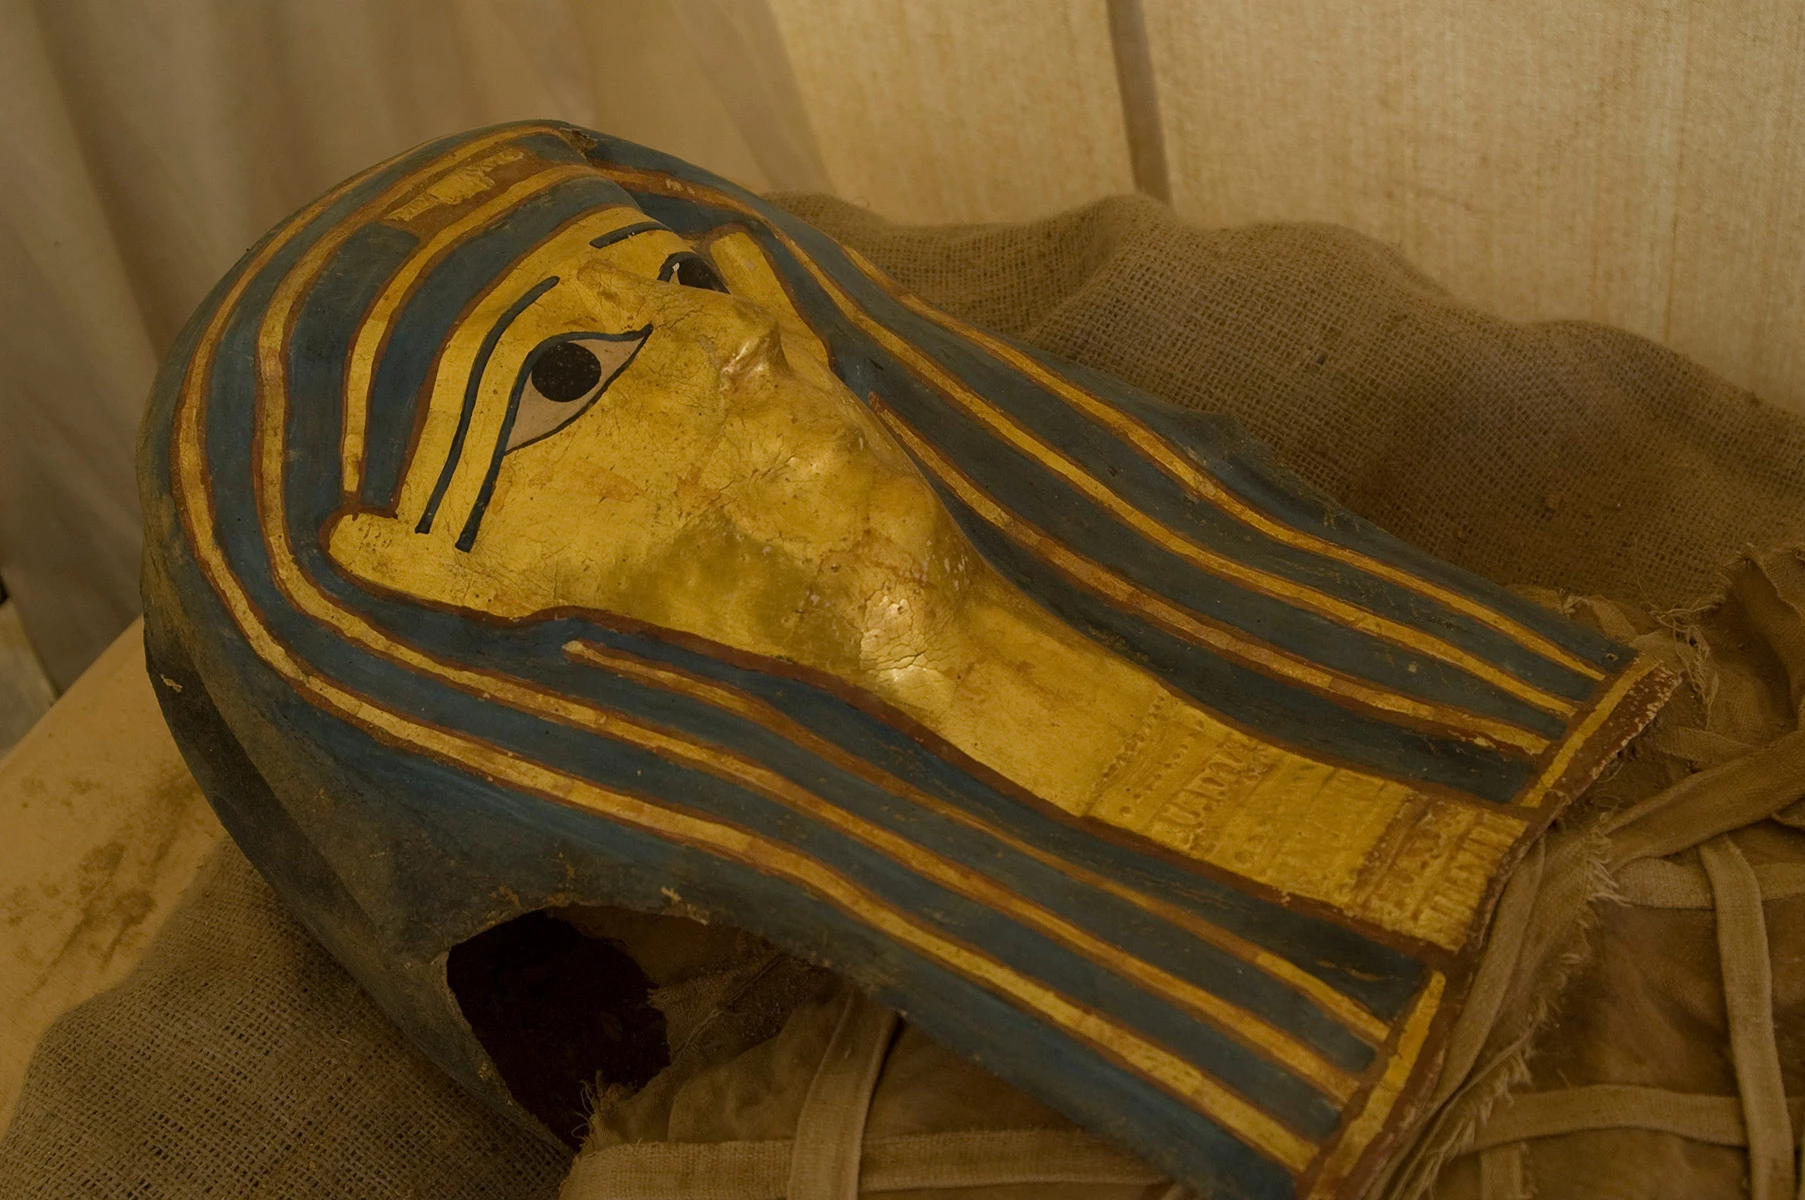 <p>Российская археологическая экспедиция в Дейр-эль-Банате: мумия в позолоченной маске</p>